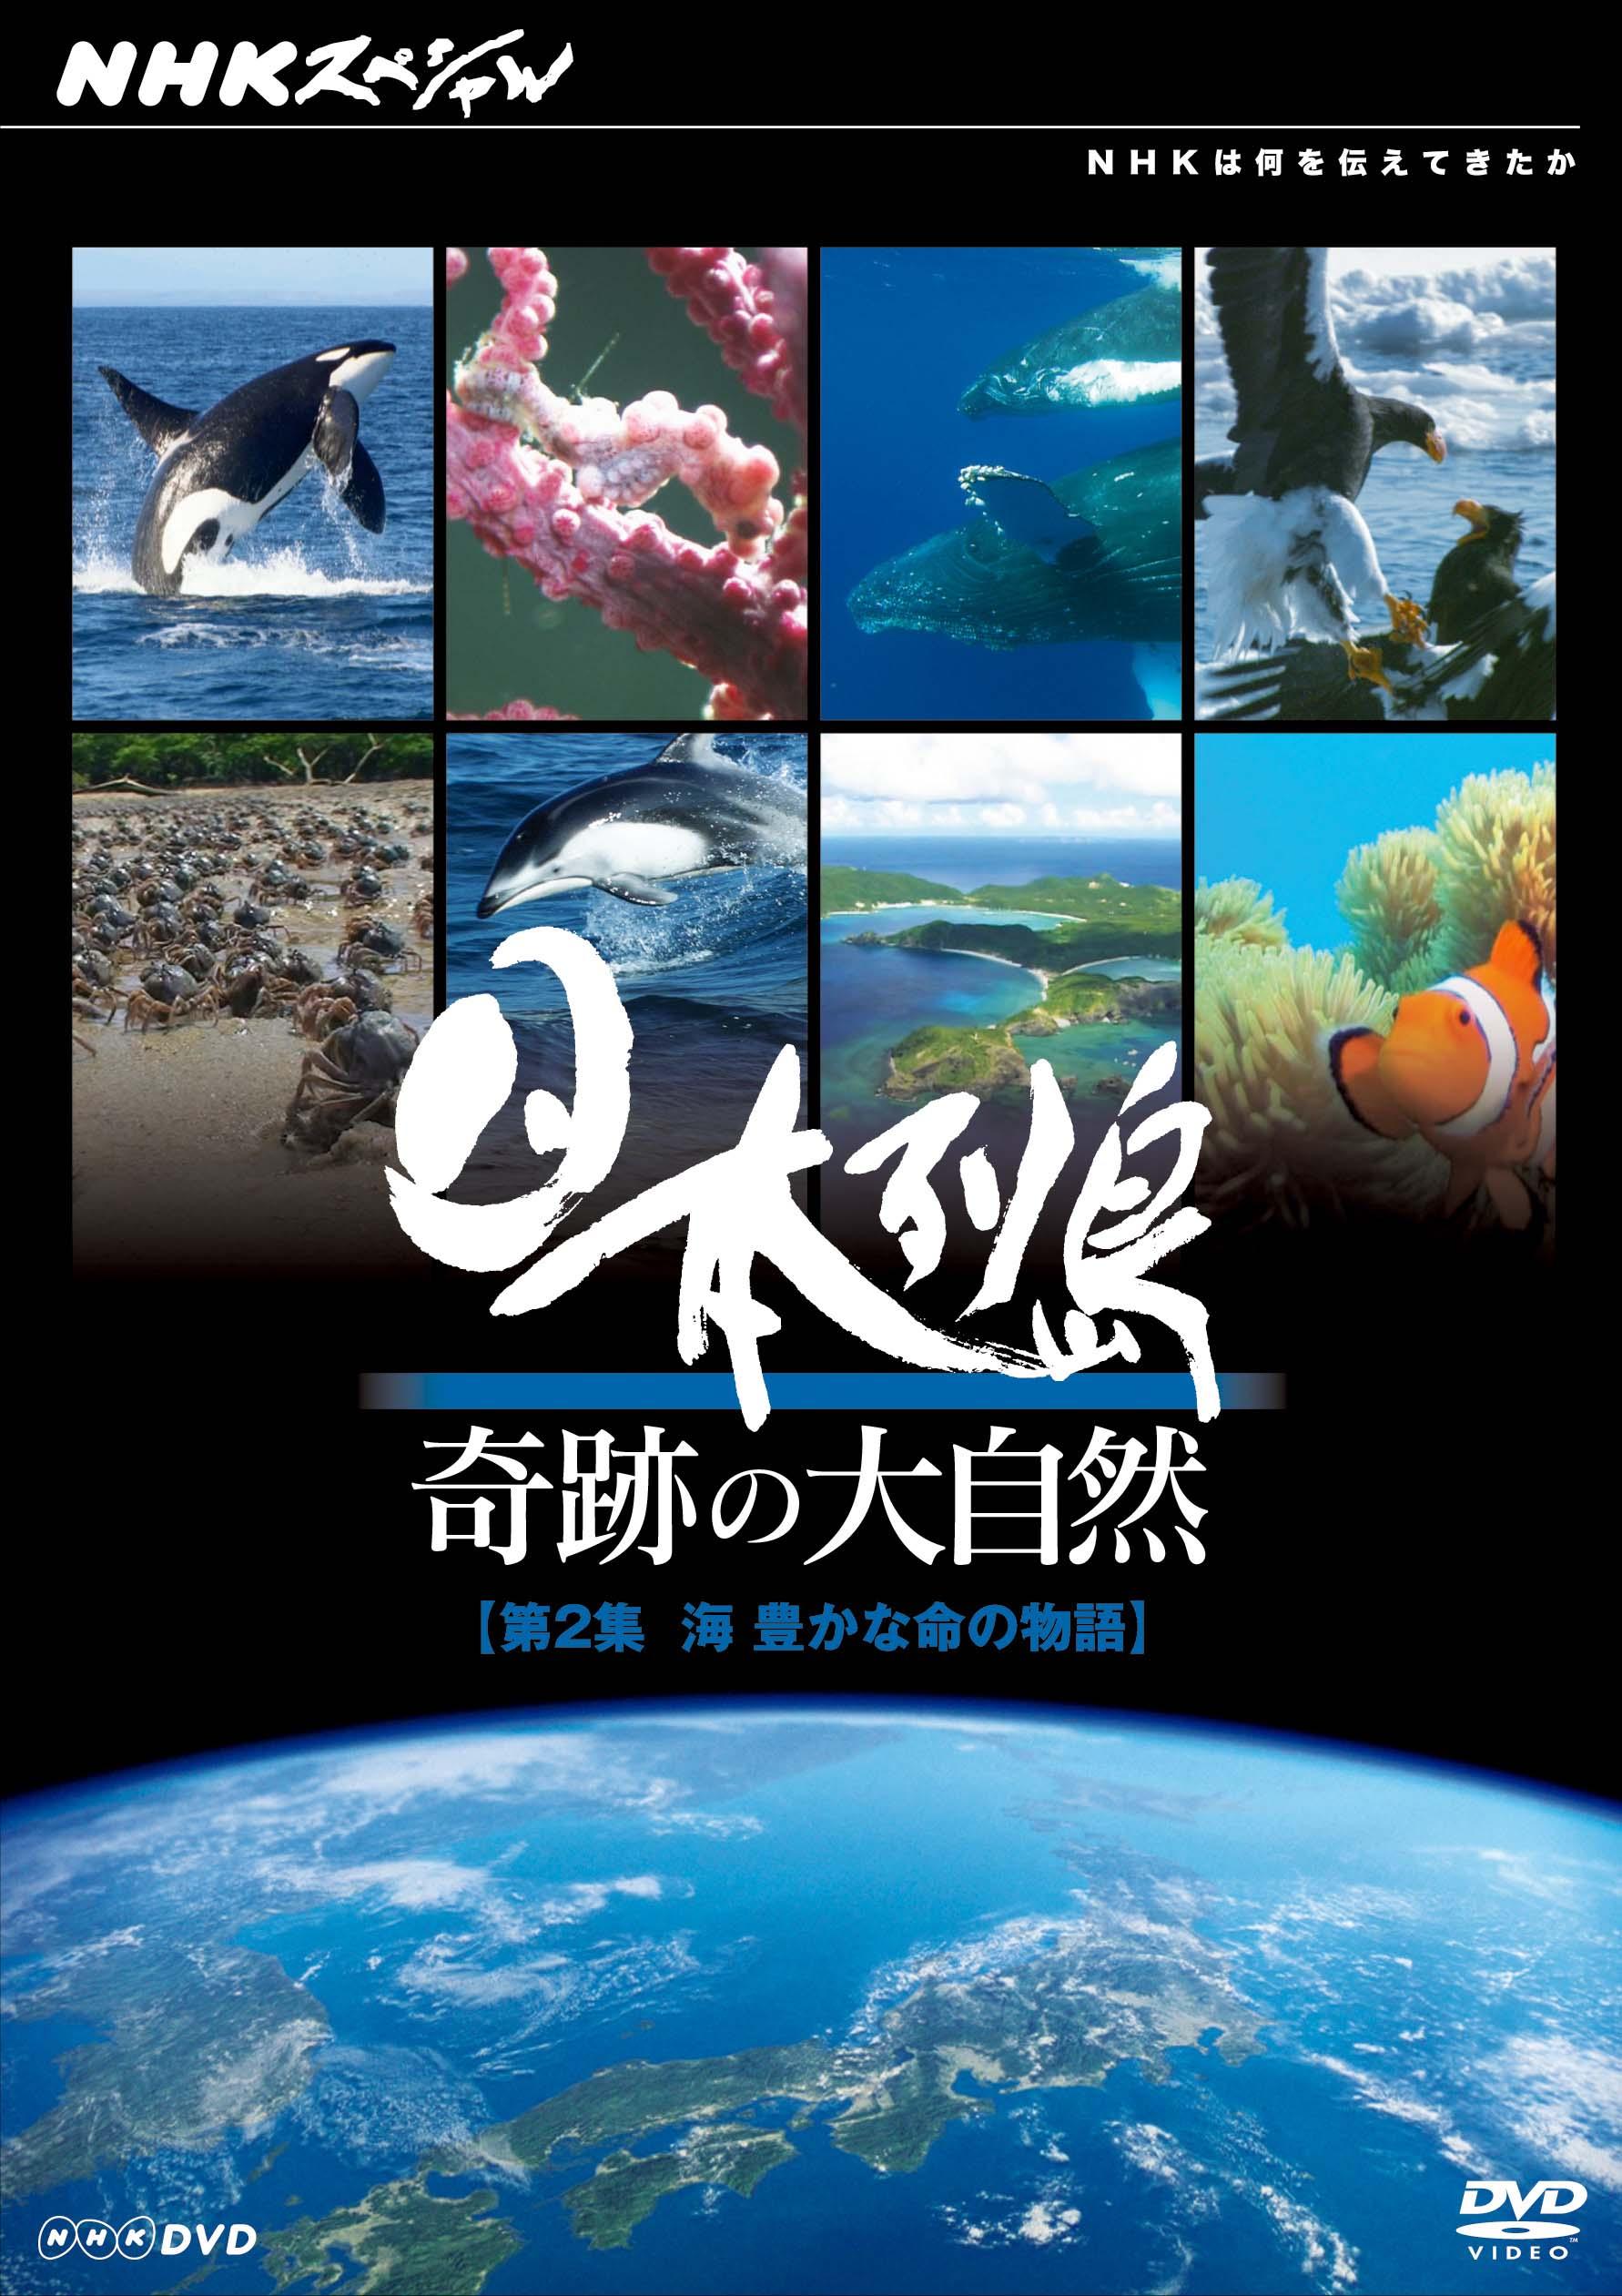 NHKスペシャル 日本列島 奇跡の大自然 第1集 森 大地をつつむ緑の物語 [DVD]